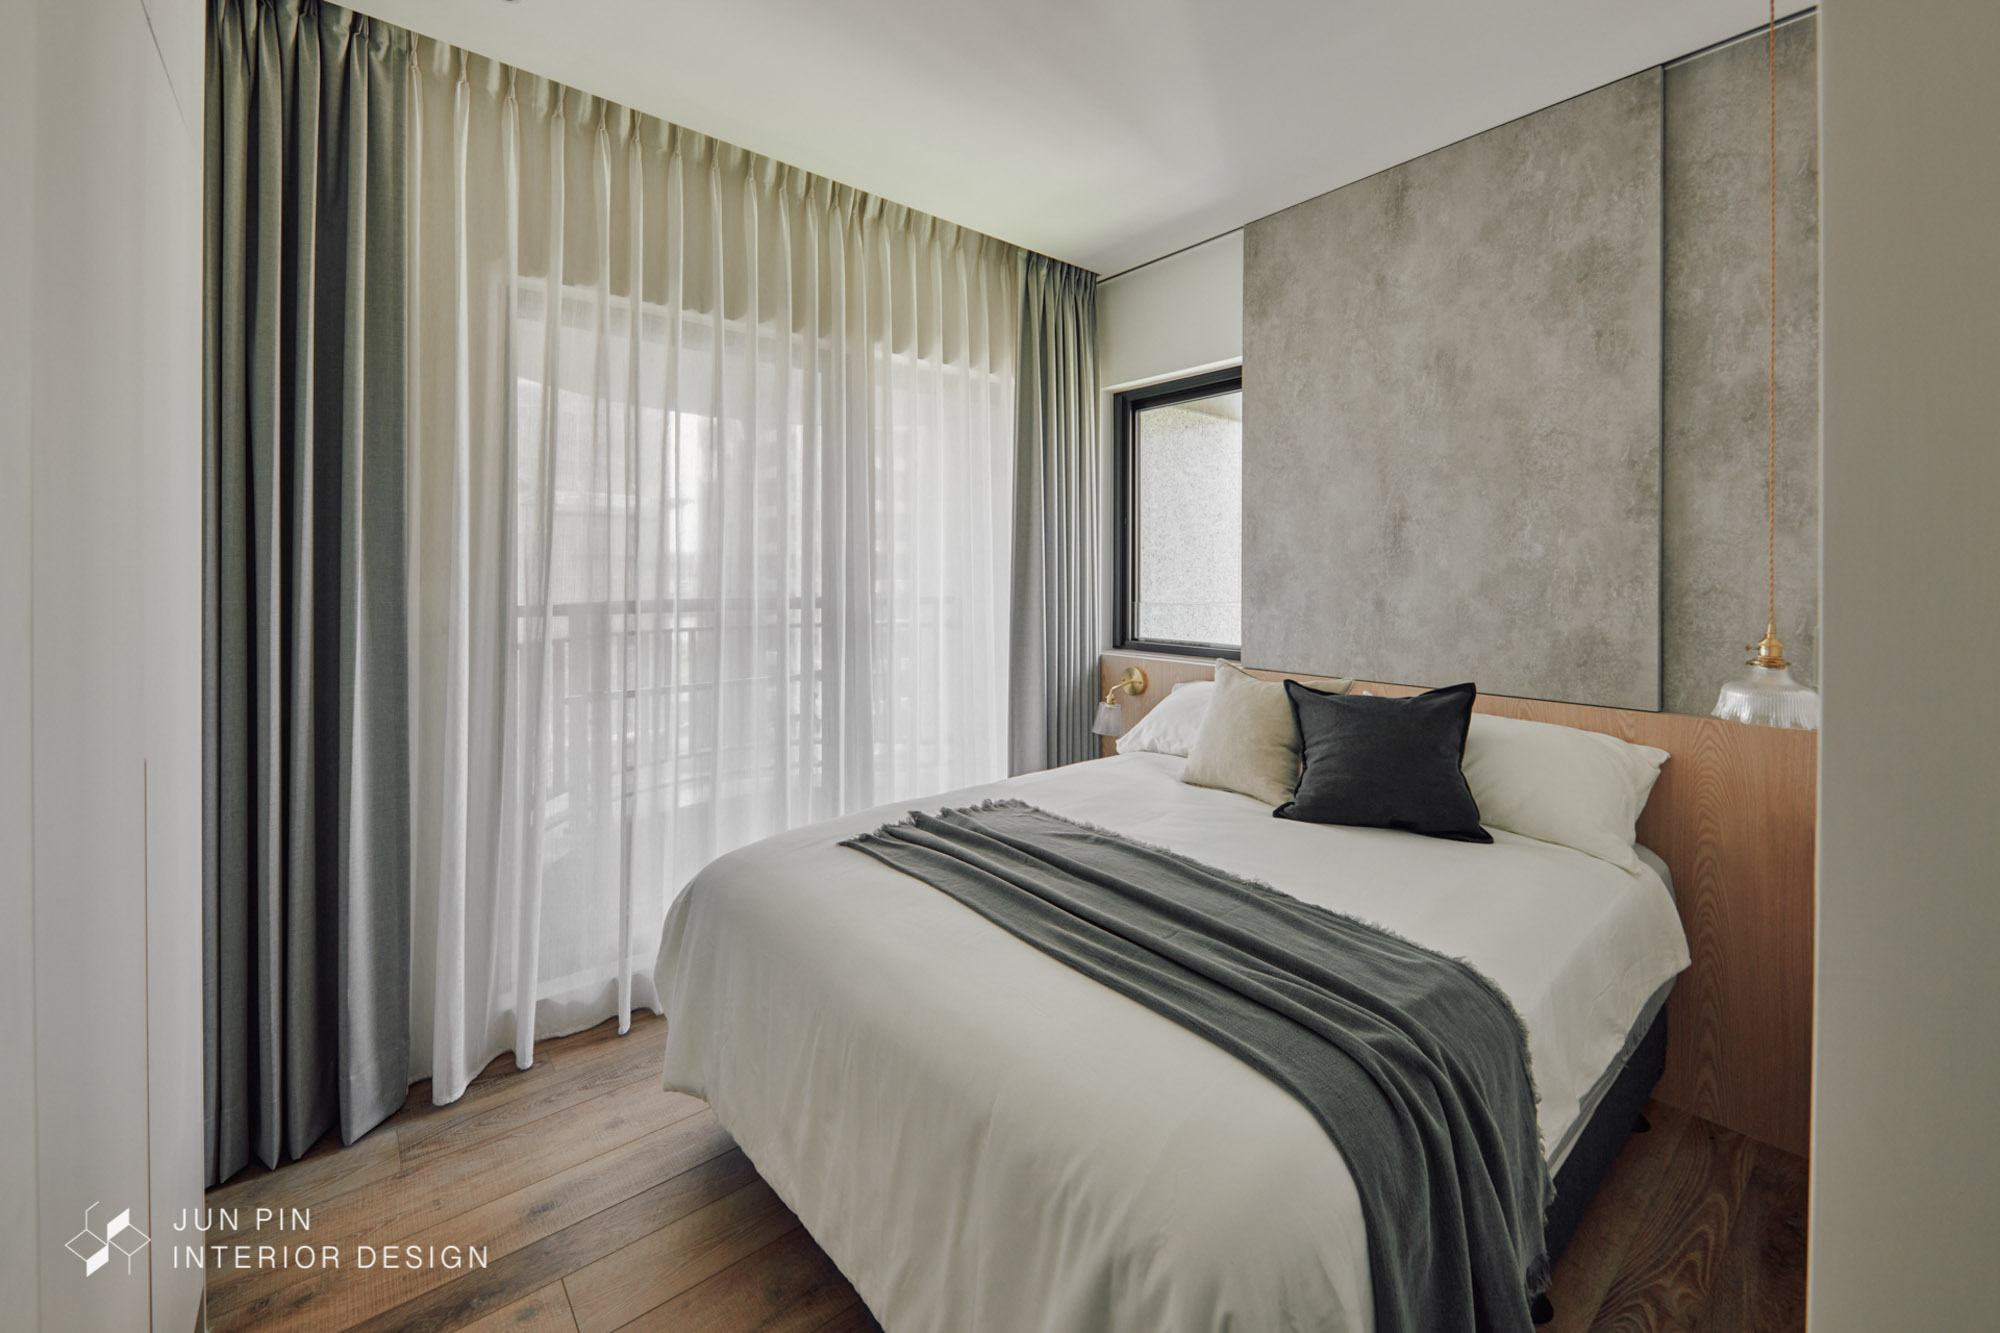 臥室床頭靠窗有影響睡眠的疑慮，規劃灰色推拉壁板靈活調整室內光線